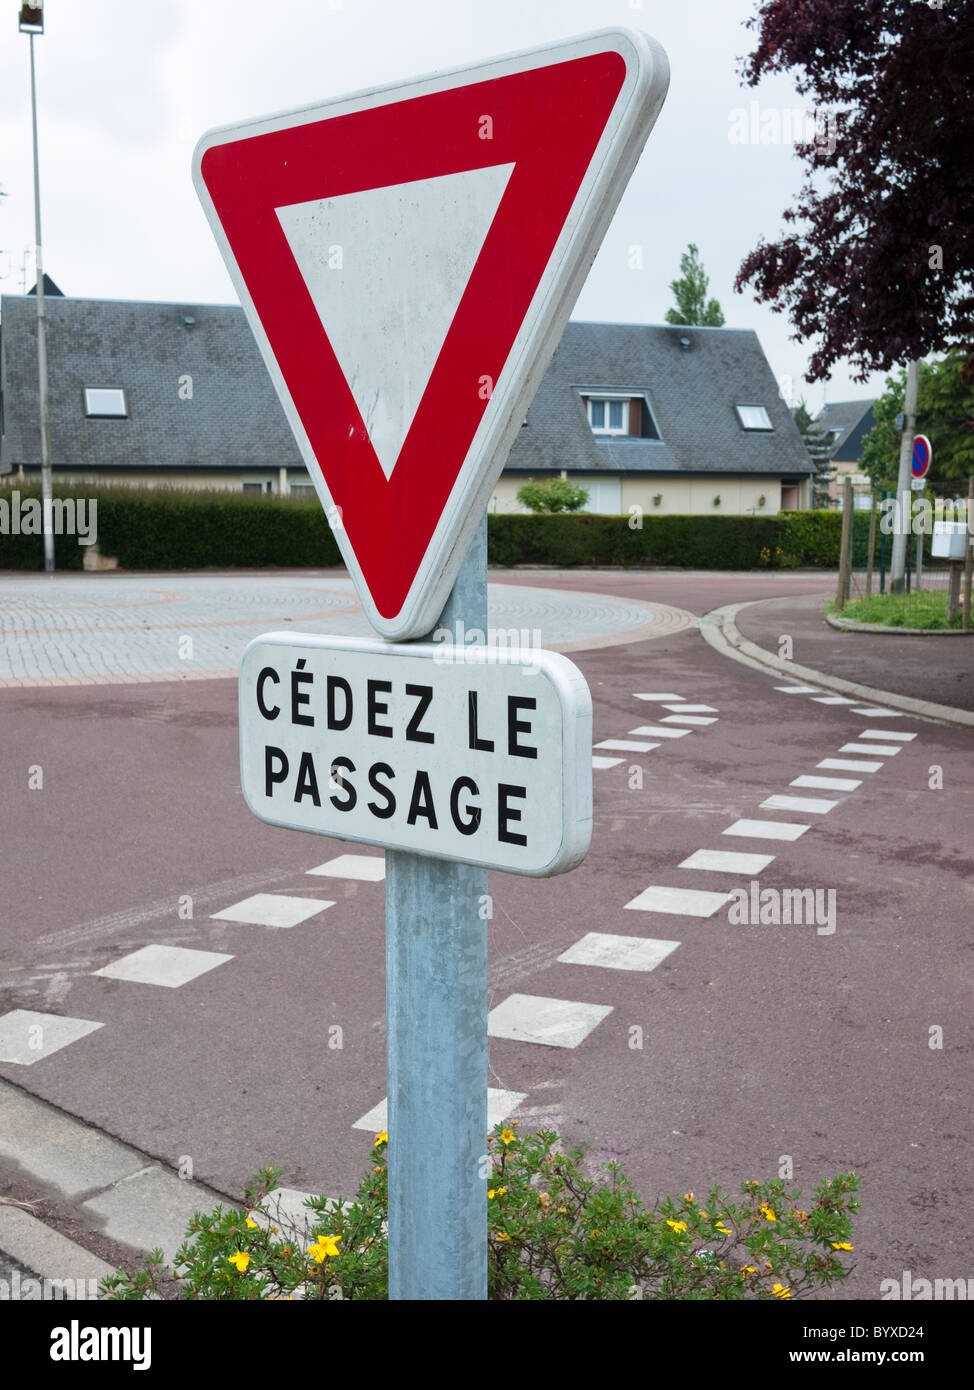 Cedez Le Passage donne cours road sign Banque D'Images